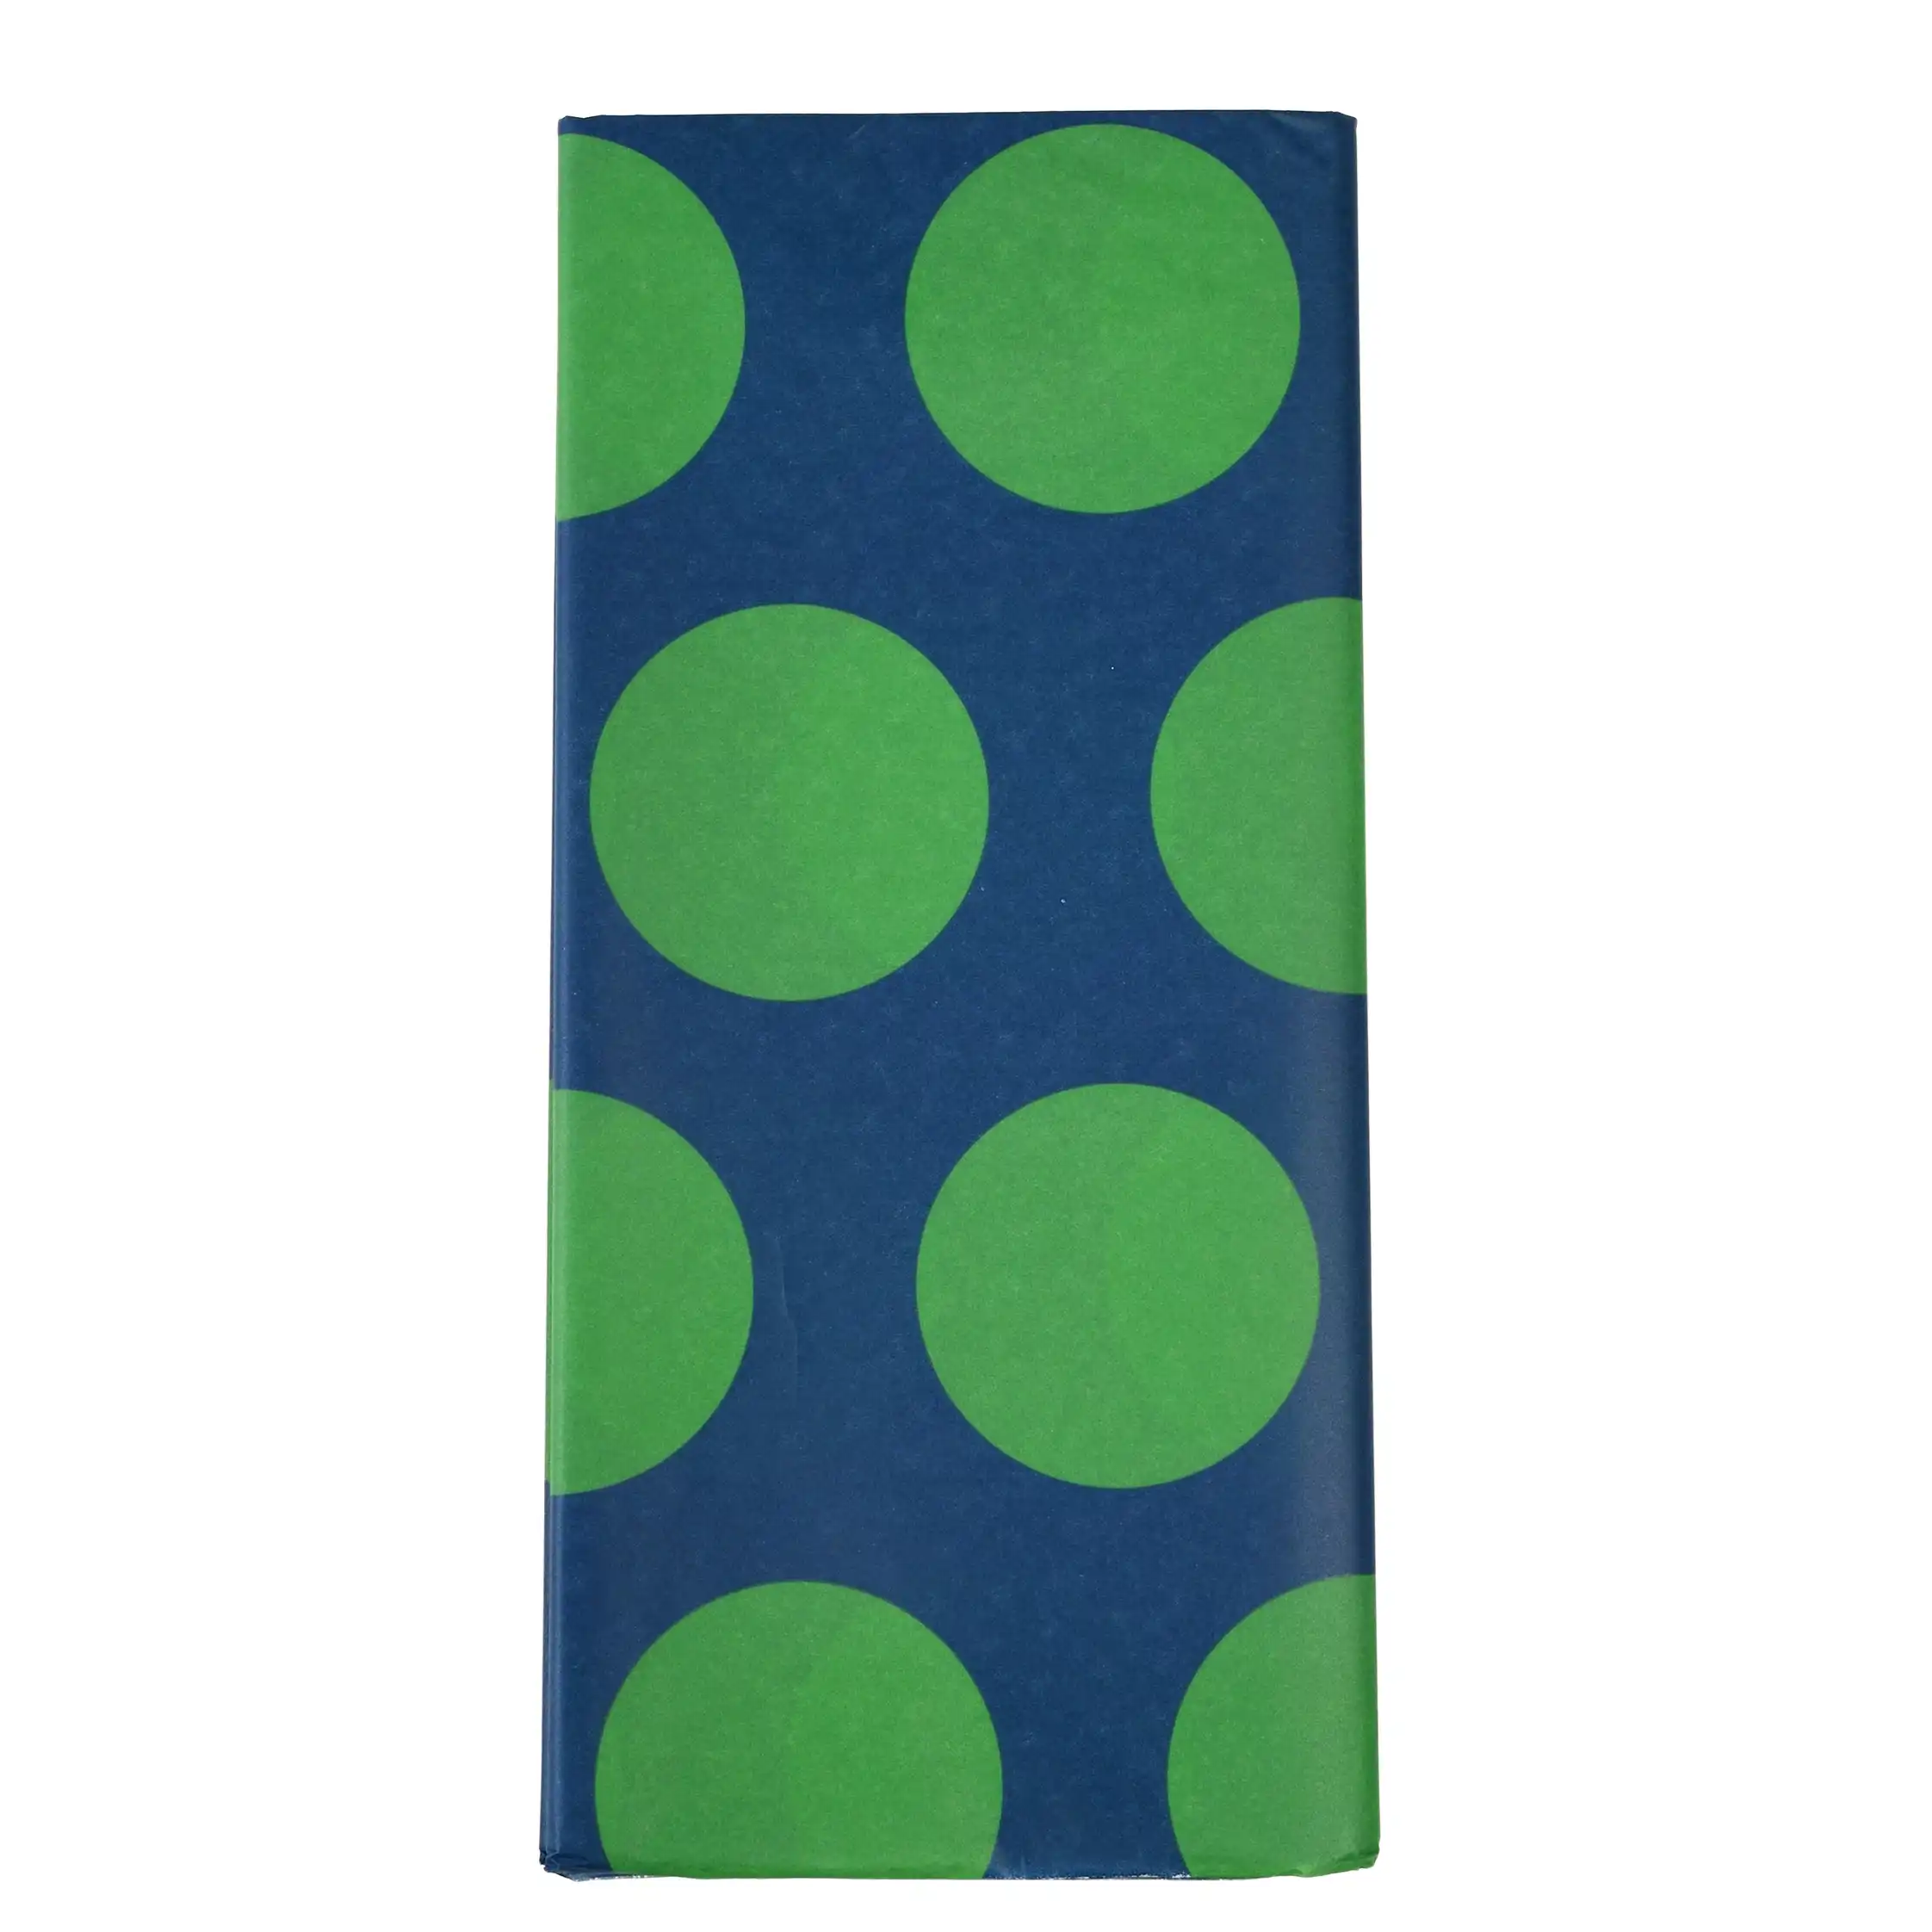 papel de seda spotlight verde y azul (10 hojas)